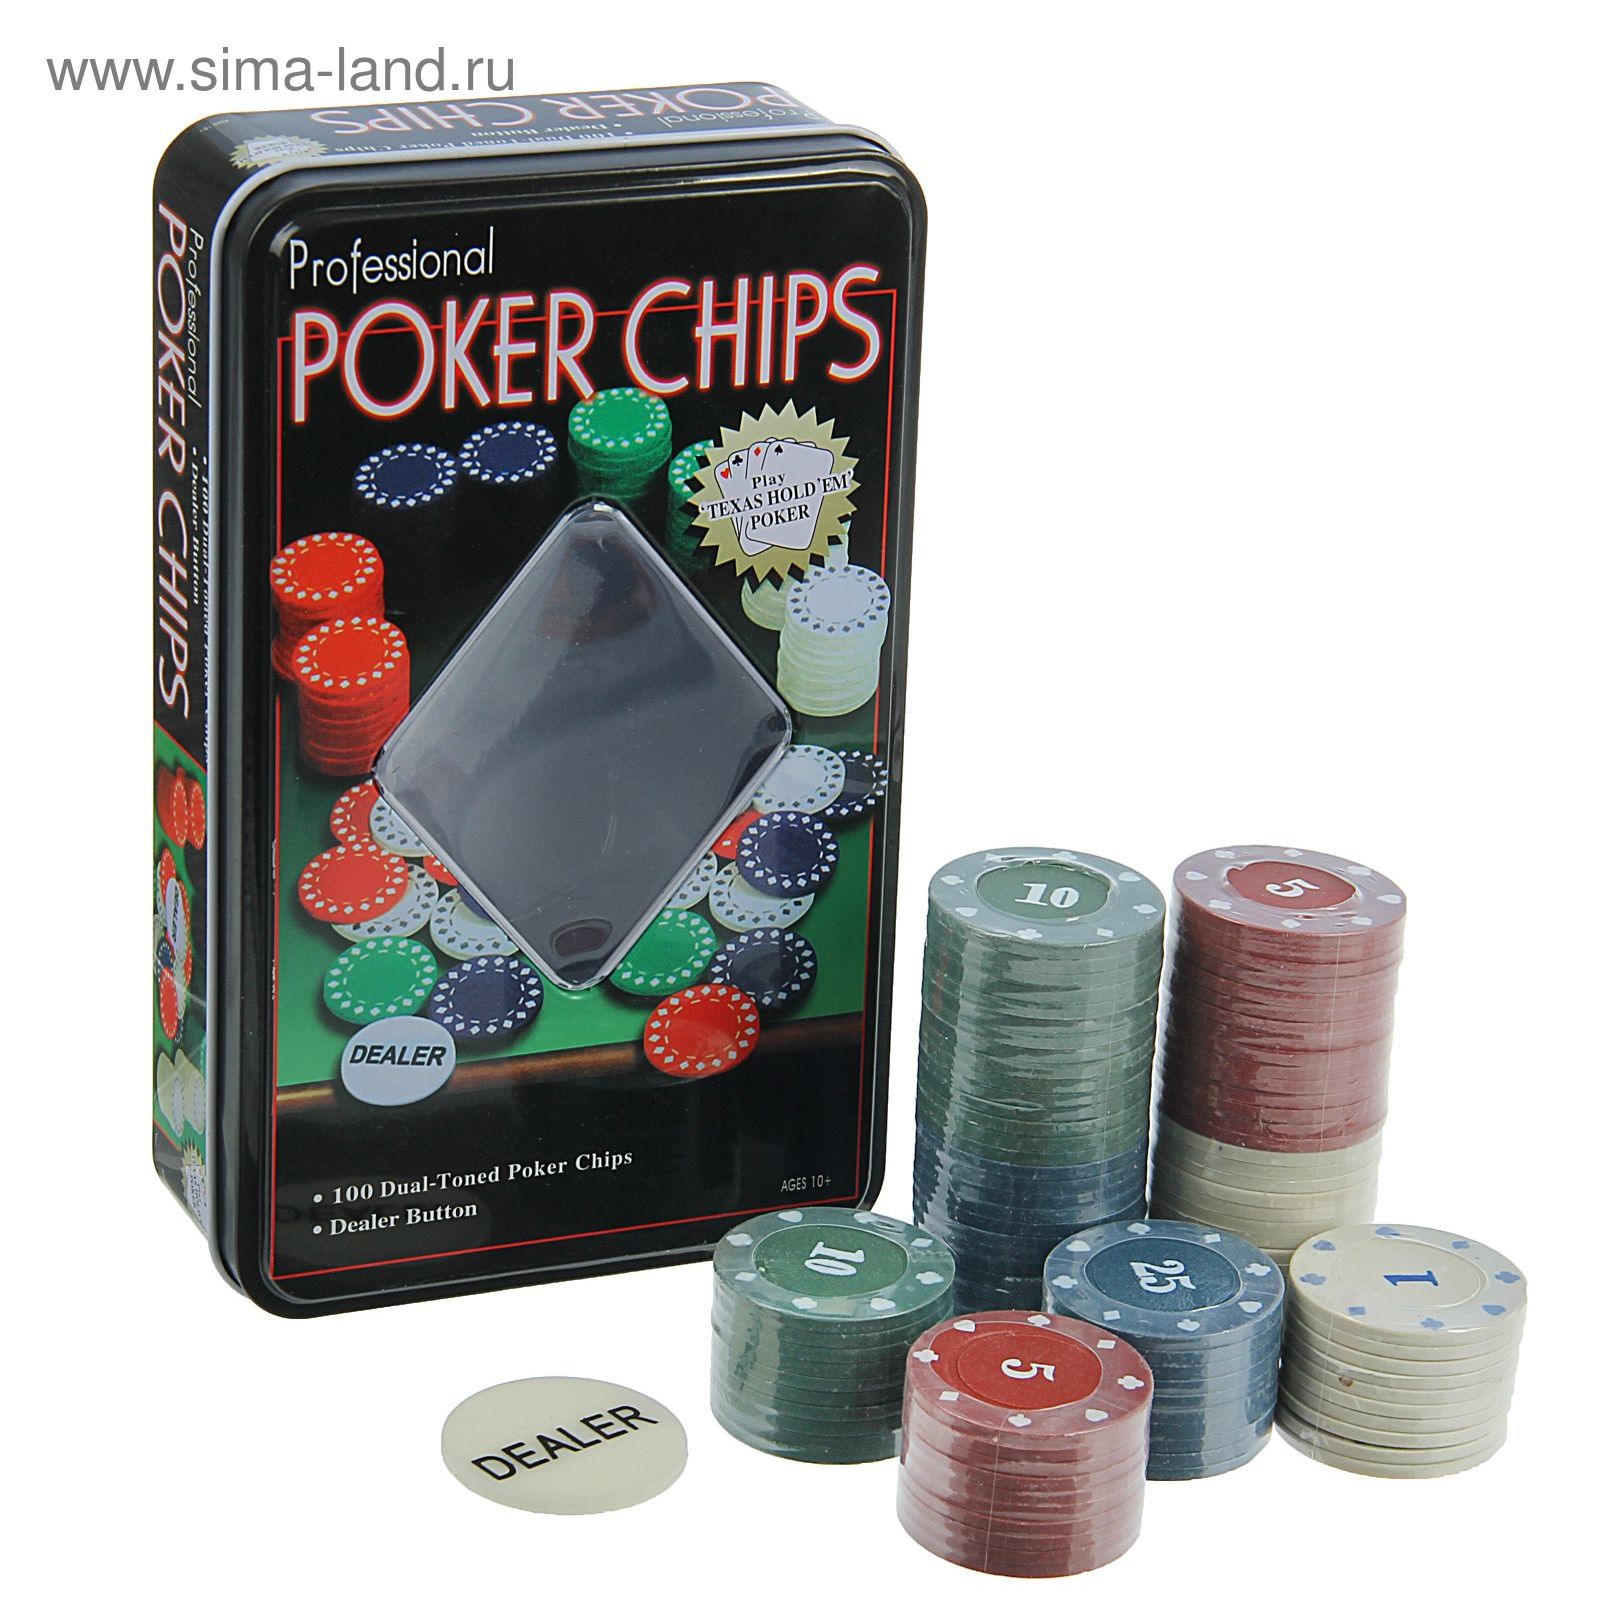 Покерный набор Poker Chips 100 фишек